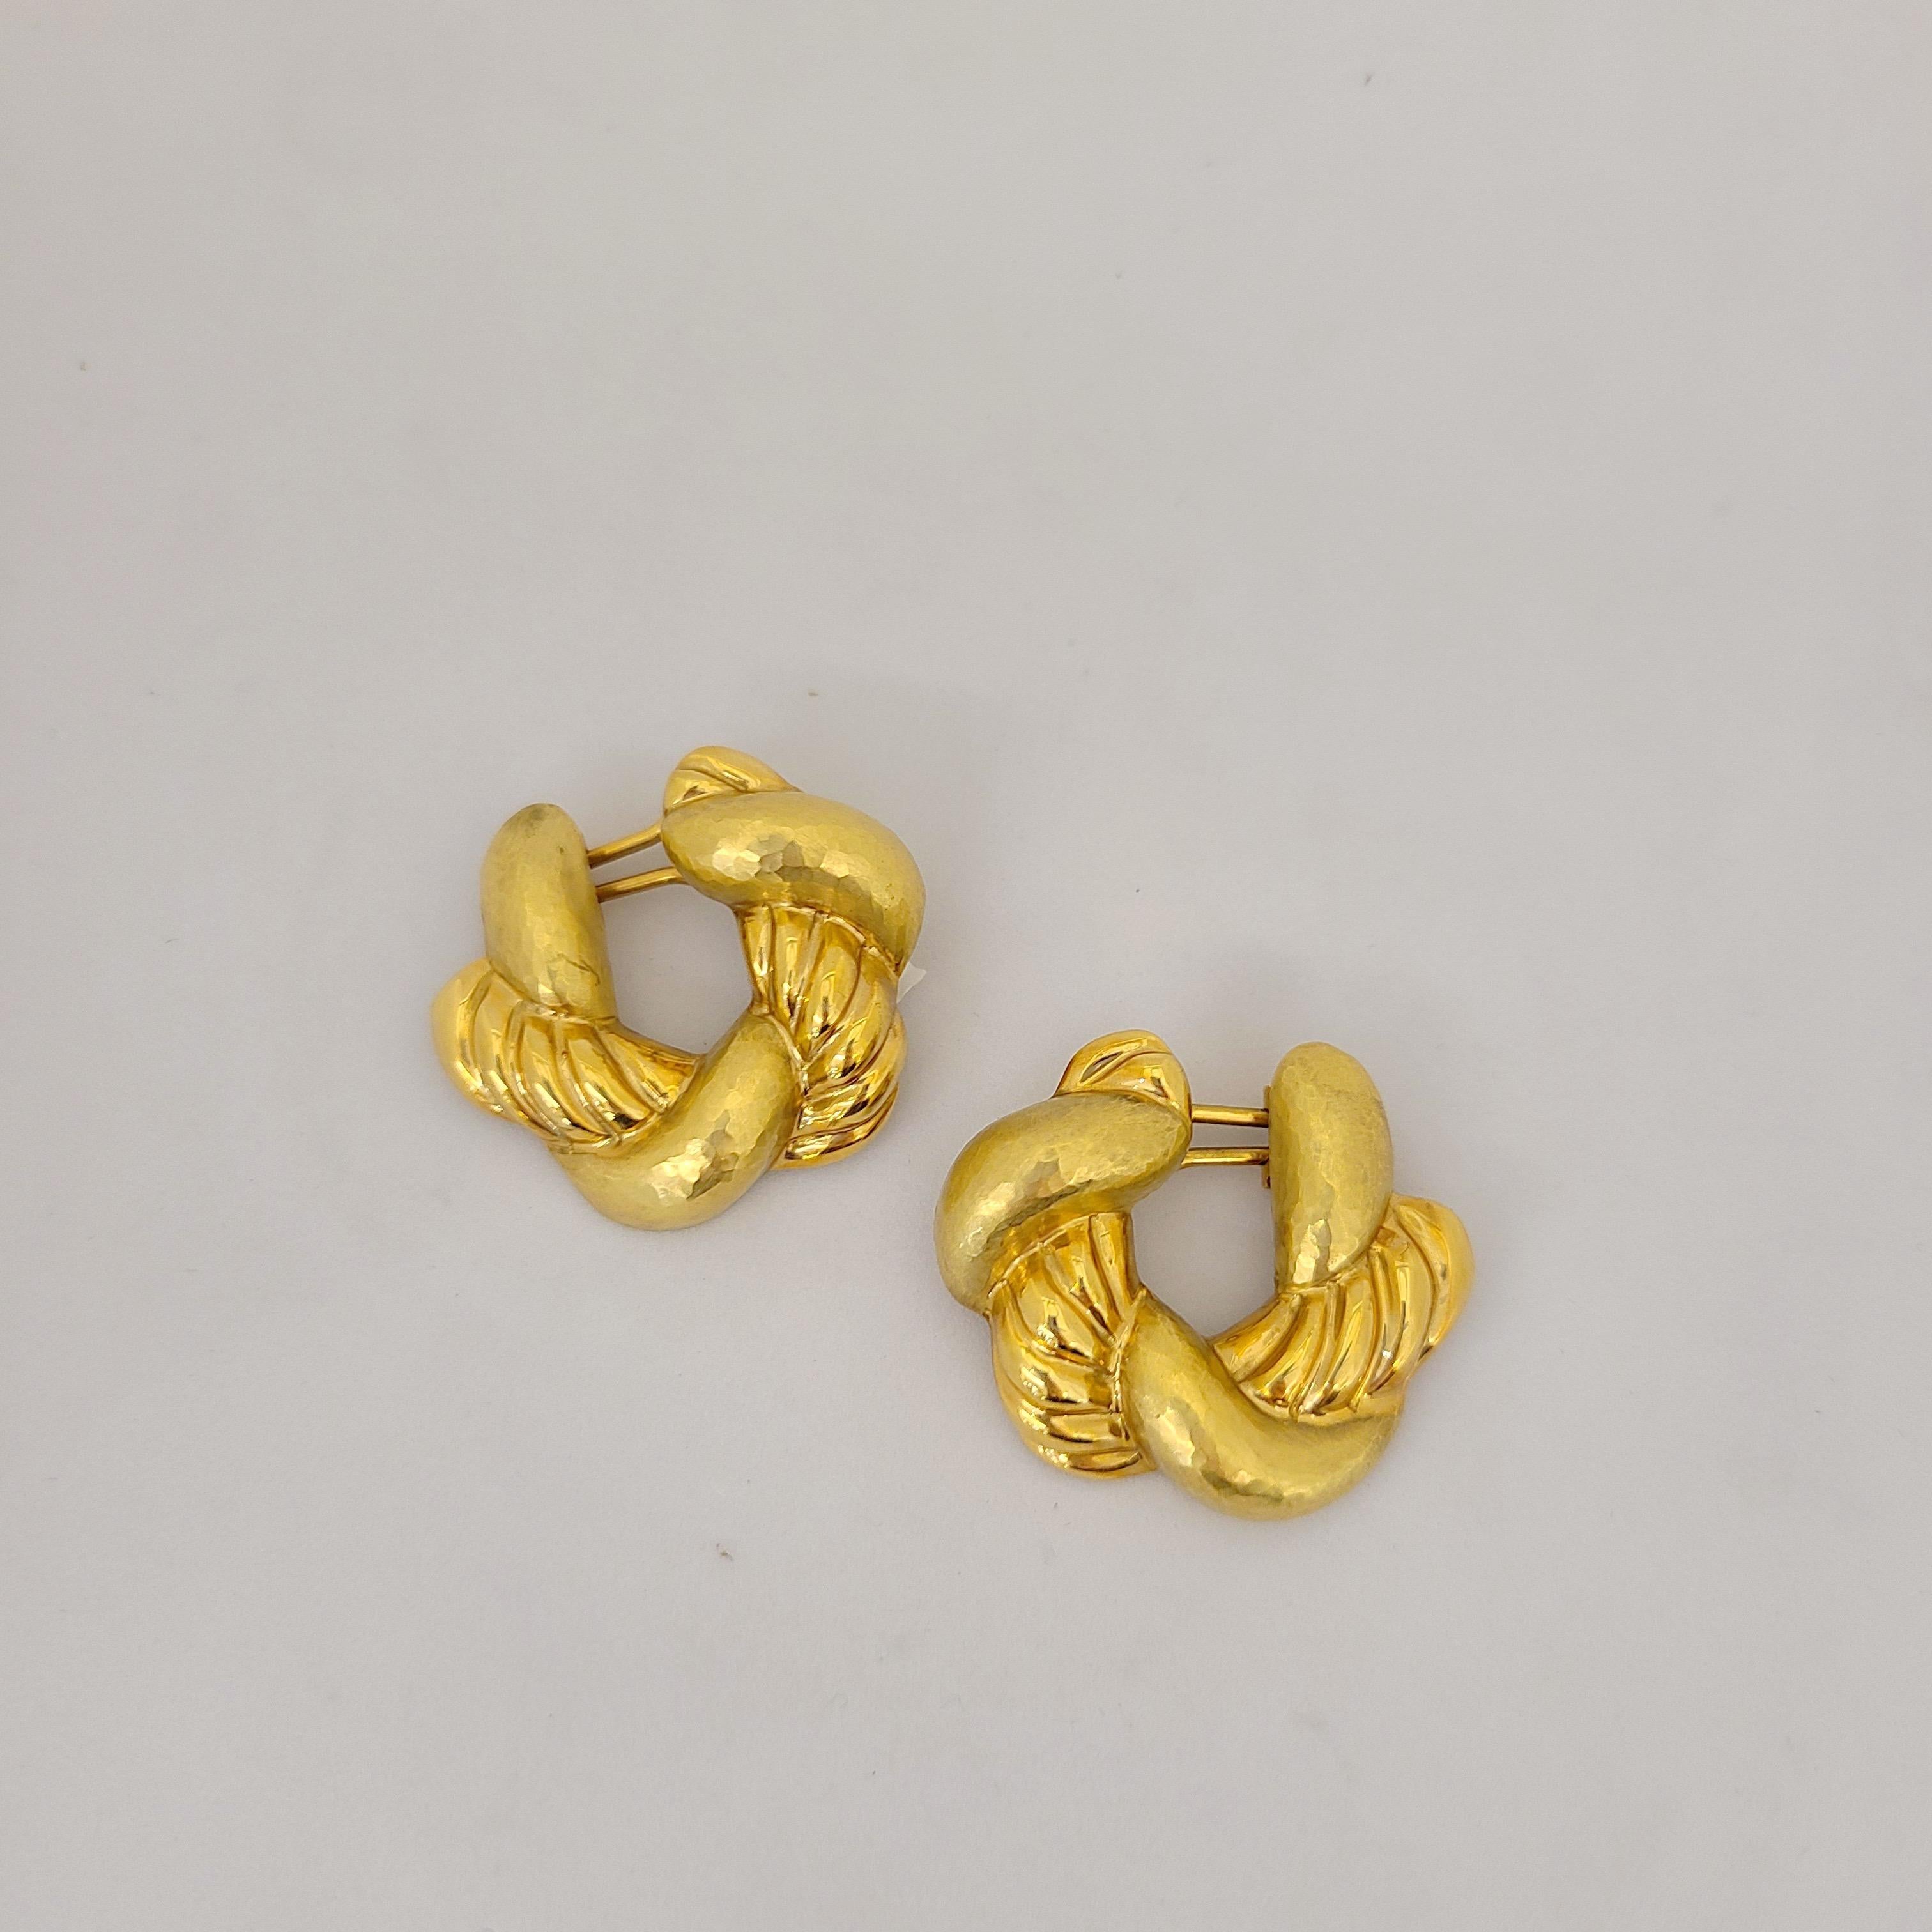 Cellini Jewelers NYC Klassische und tragbare Ohrringe aus 18 Karat Gelbgold mit einem Geflecht aus abwechselnd gehämmertem und hochglanzpoliertem Gold. Die Ohrringe sind durchbohrt und mit einem französischen Clip versehen. Sie messen 1-1/4